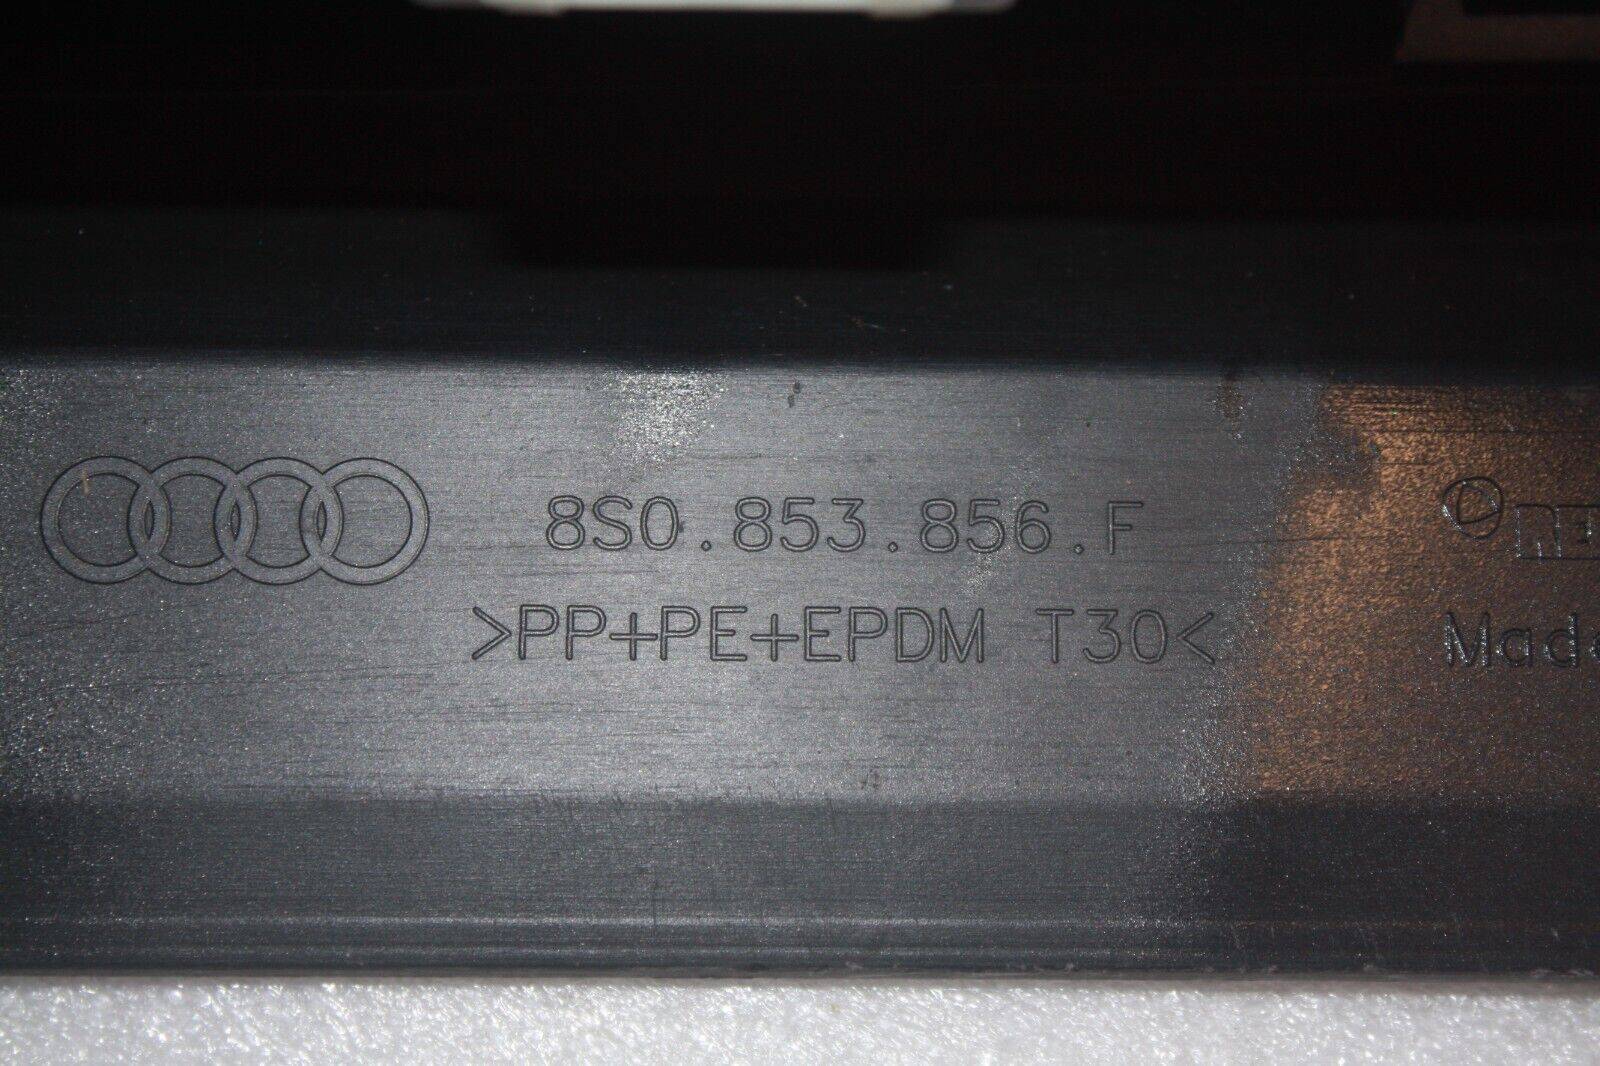 Audi-TTRS-Left-Side-Skirt-8S0853856F-Genuine-176202746354-10